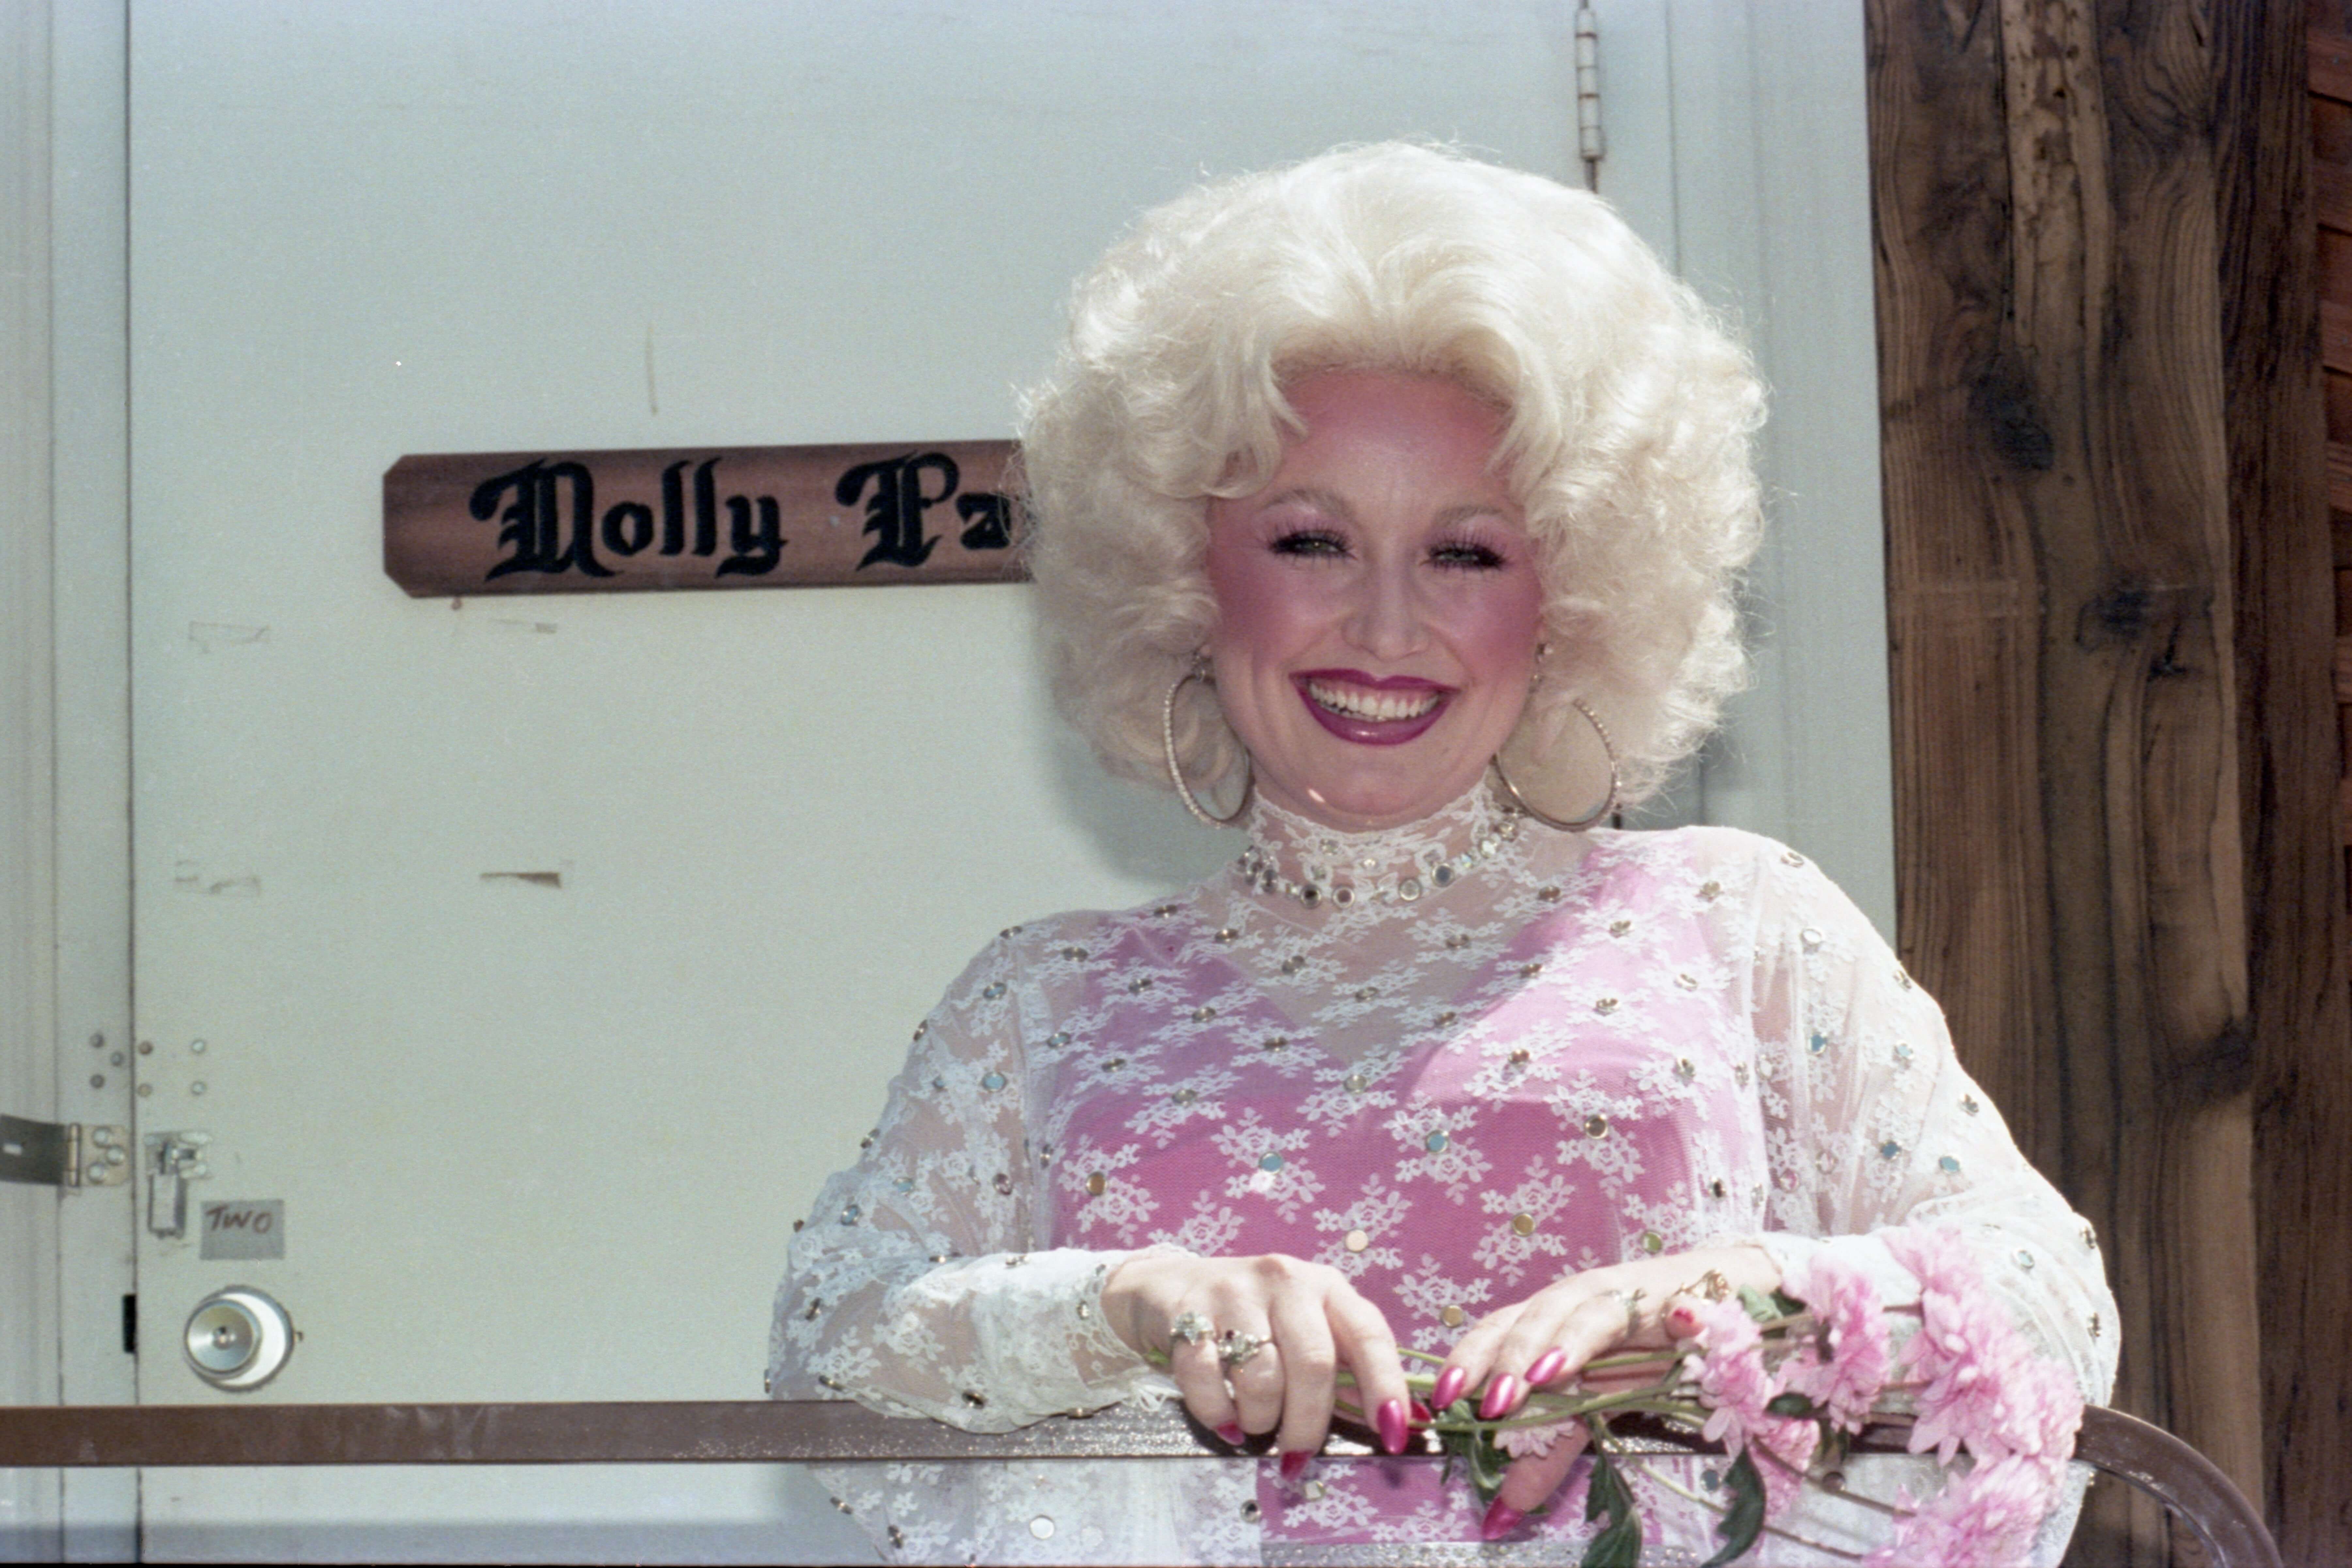 Perché Dolly Parton era così interessata al trucco crescendo, anche se era proibito